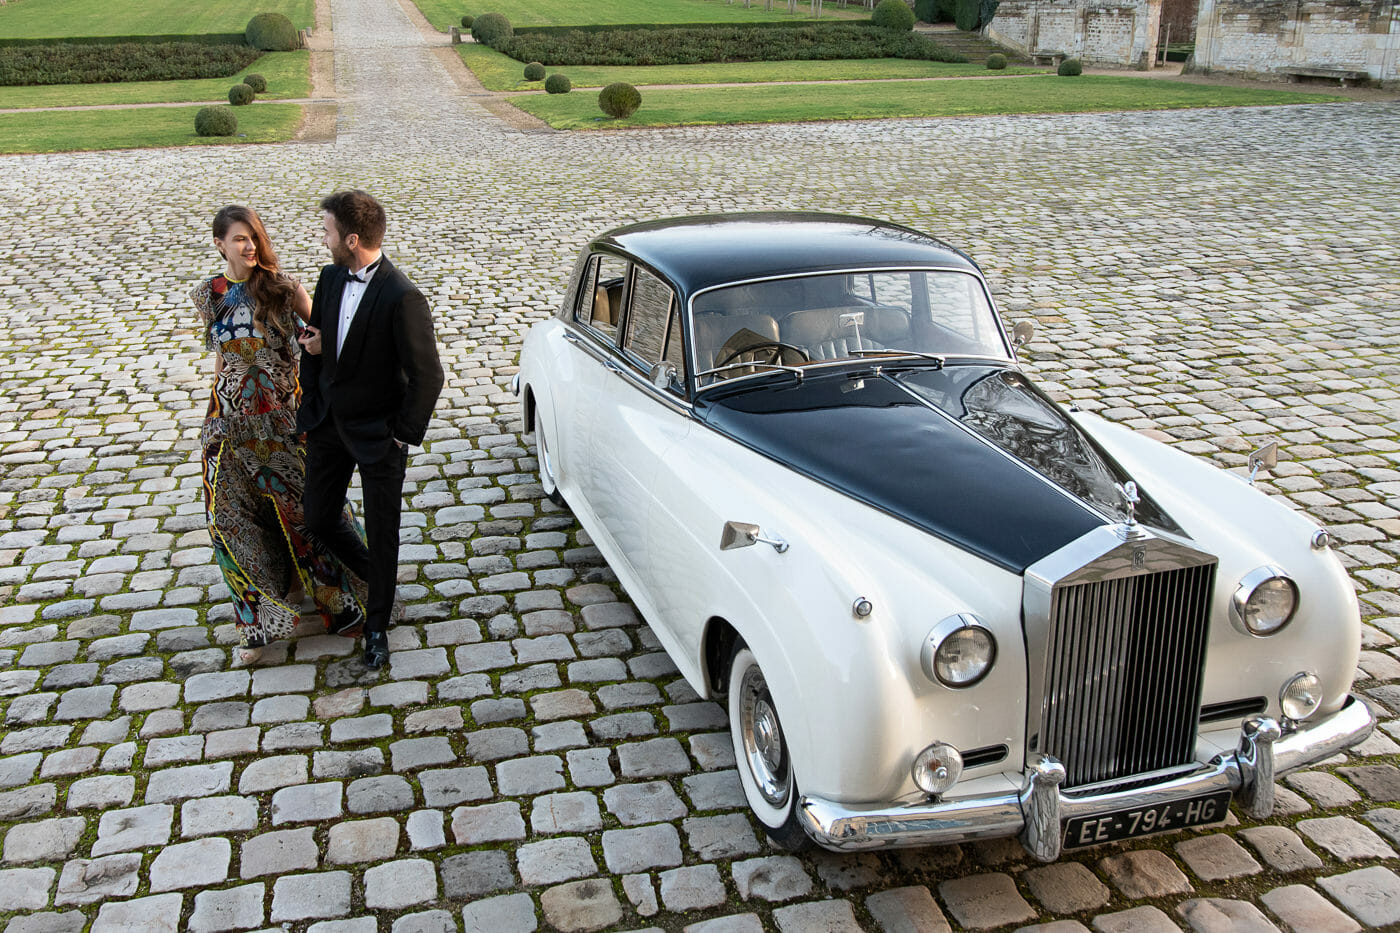 The couple arrives at Chateau de Villette with a vintage Rolls-Royce for their surprise Paris proposal